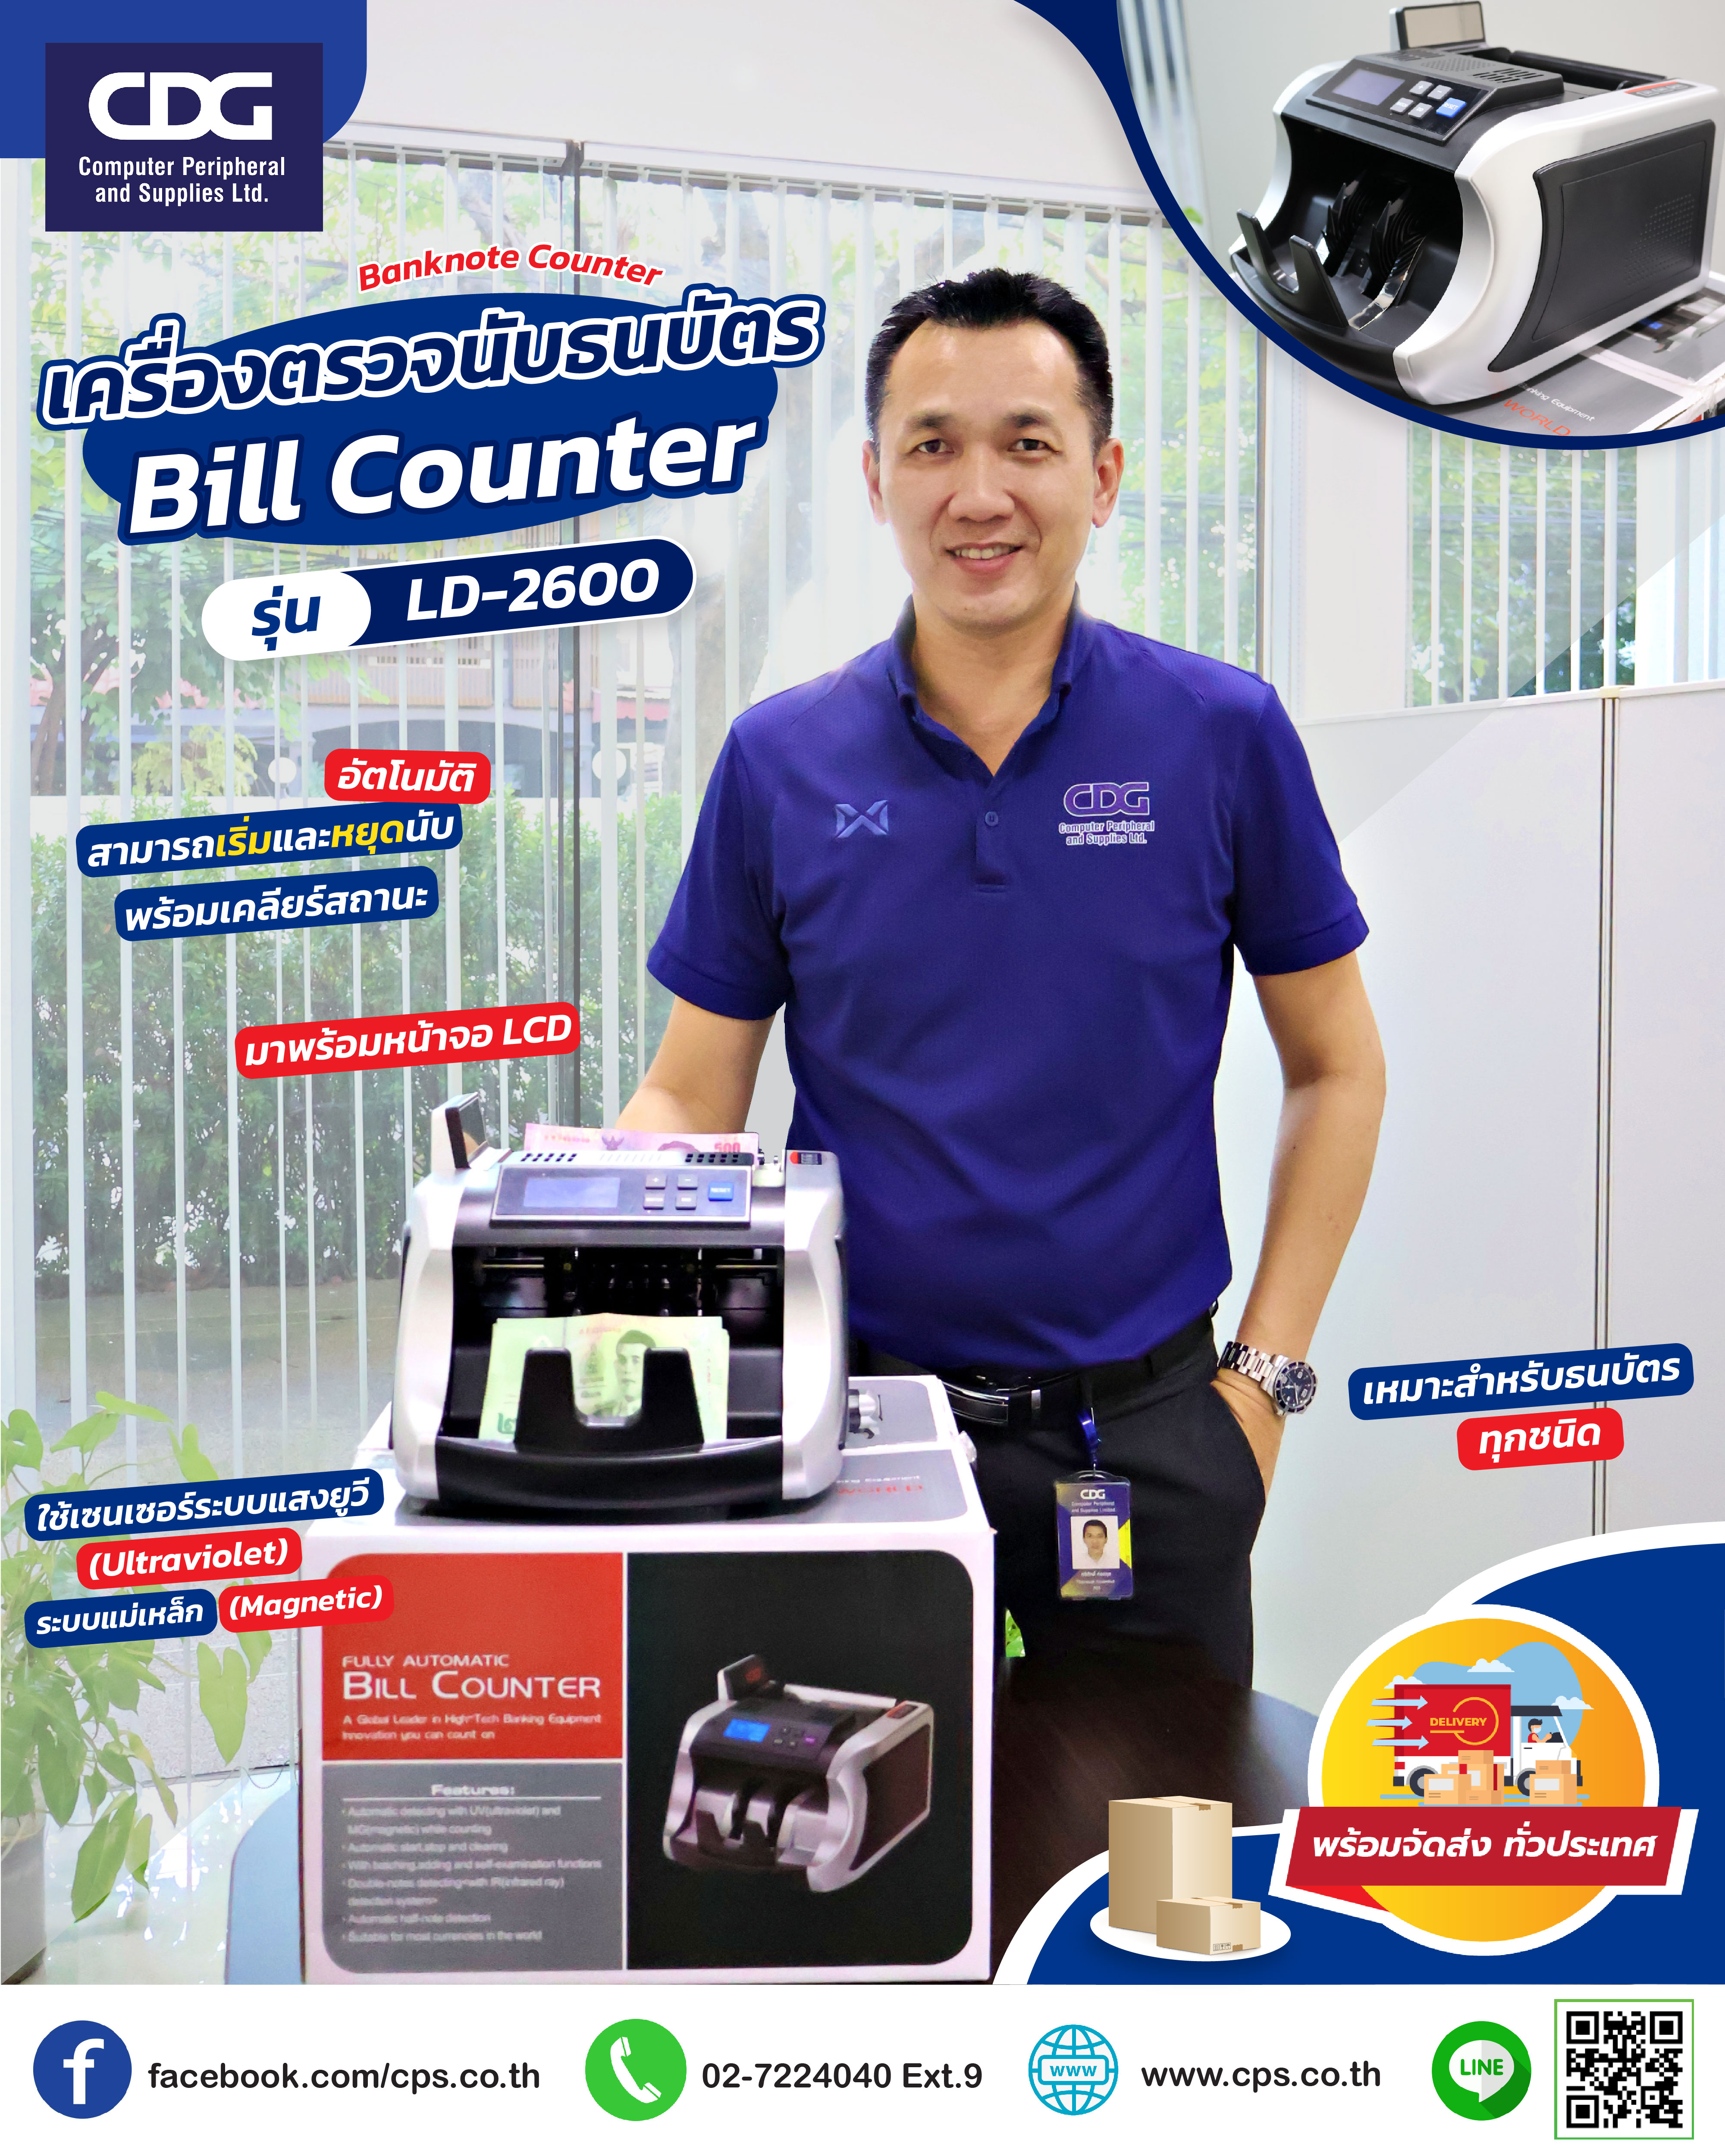 Bill Counter Model LD-2600